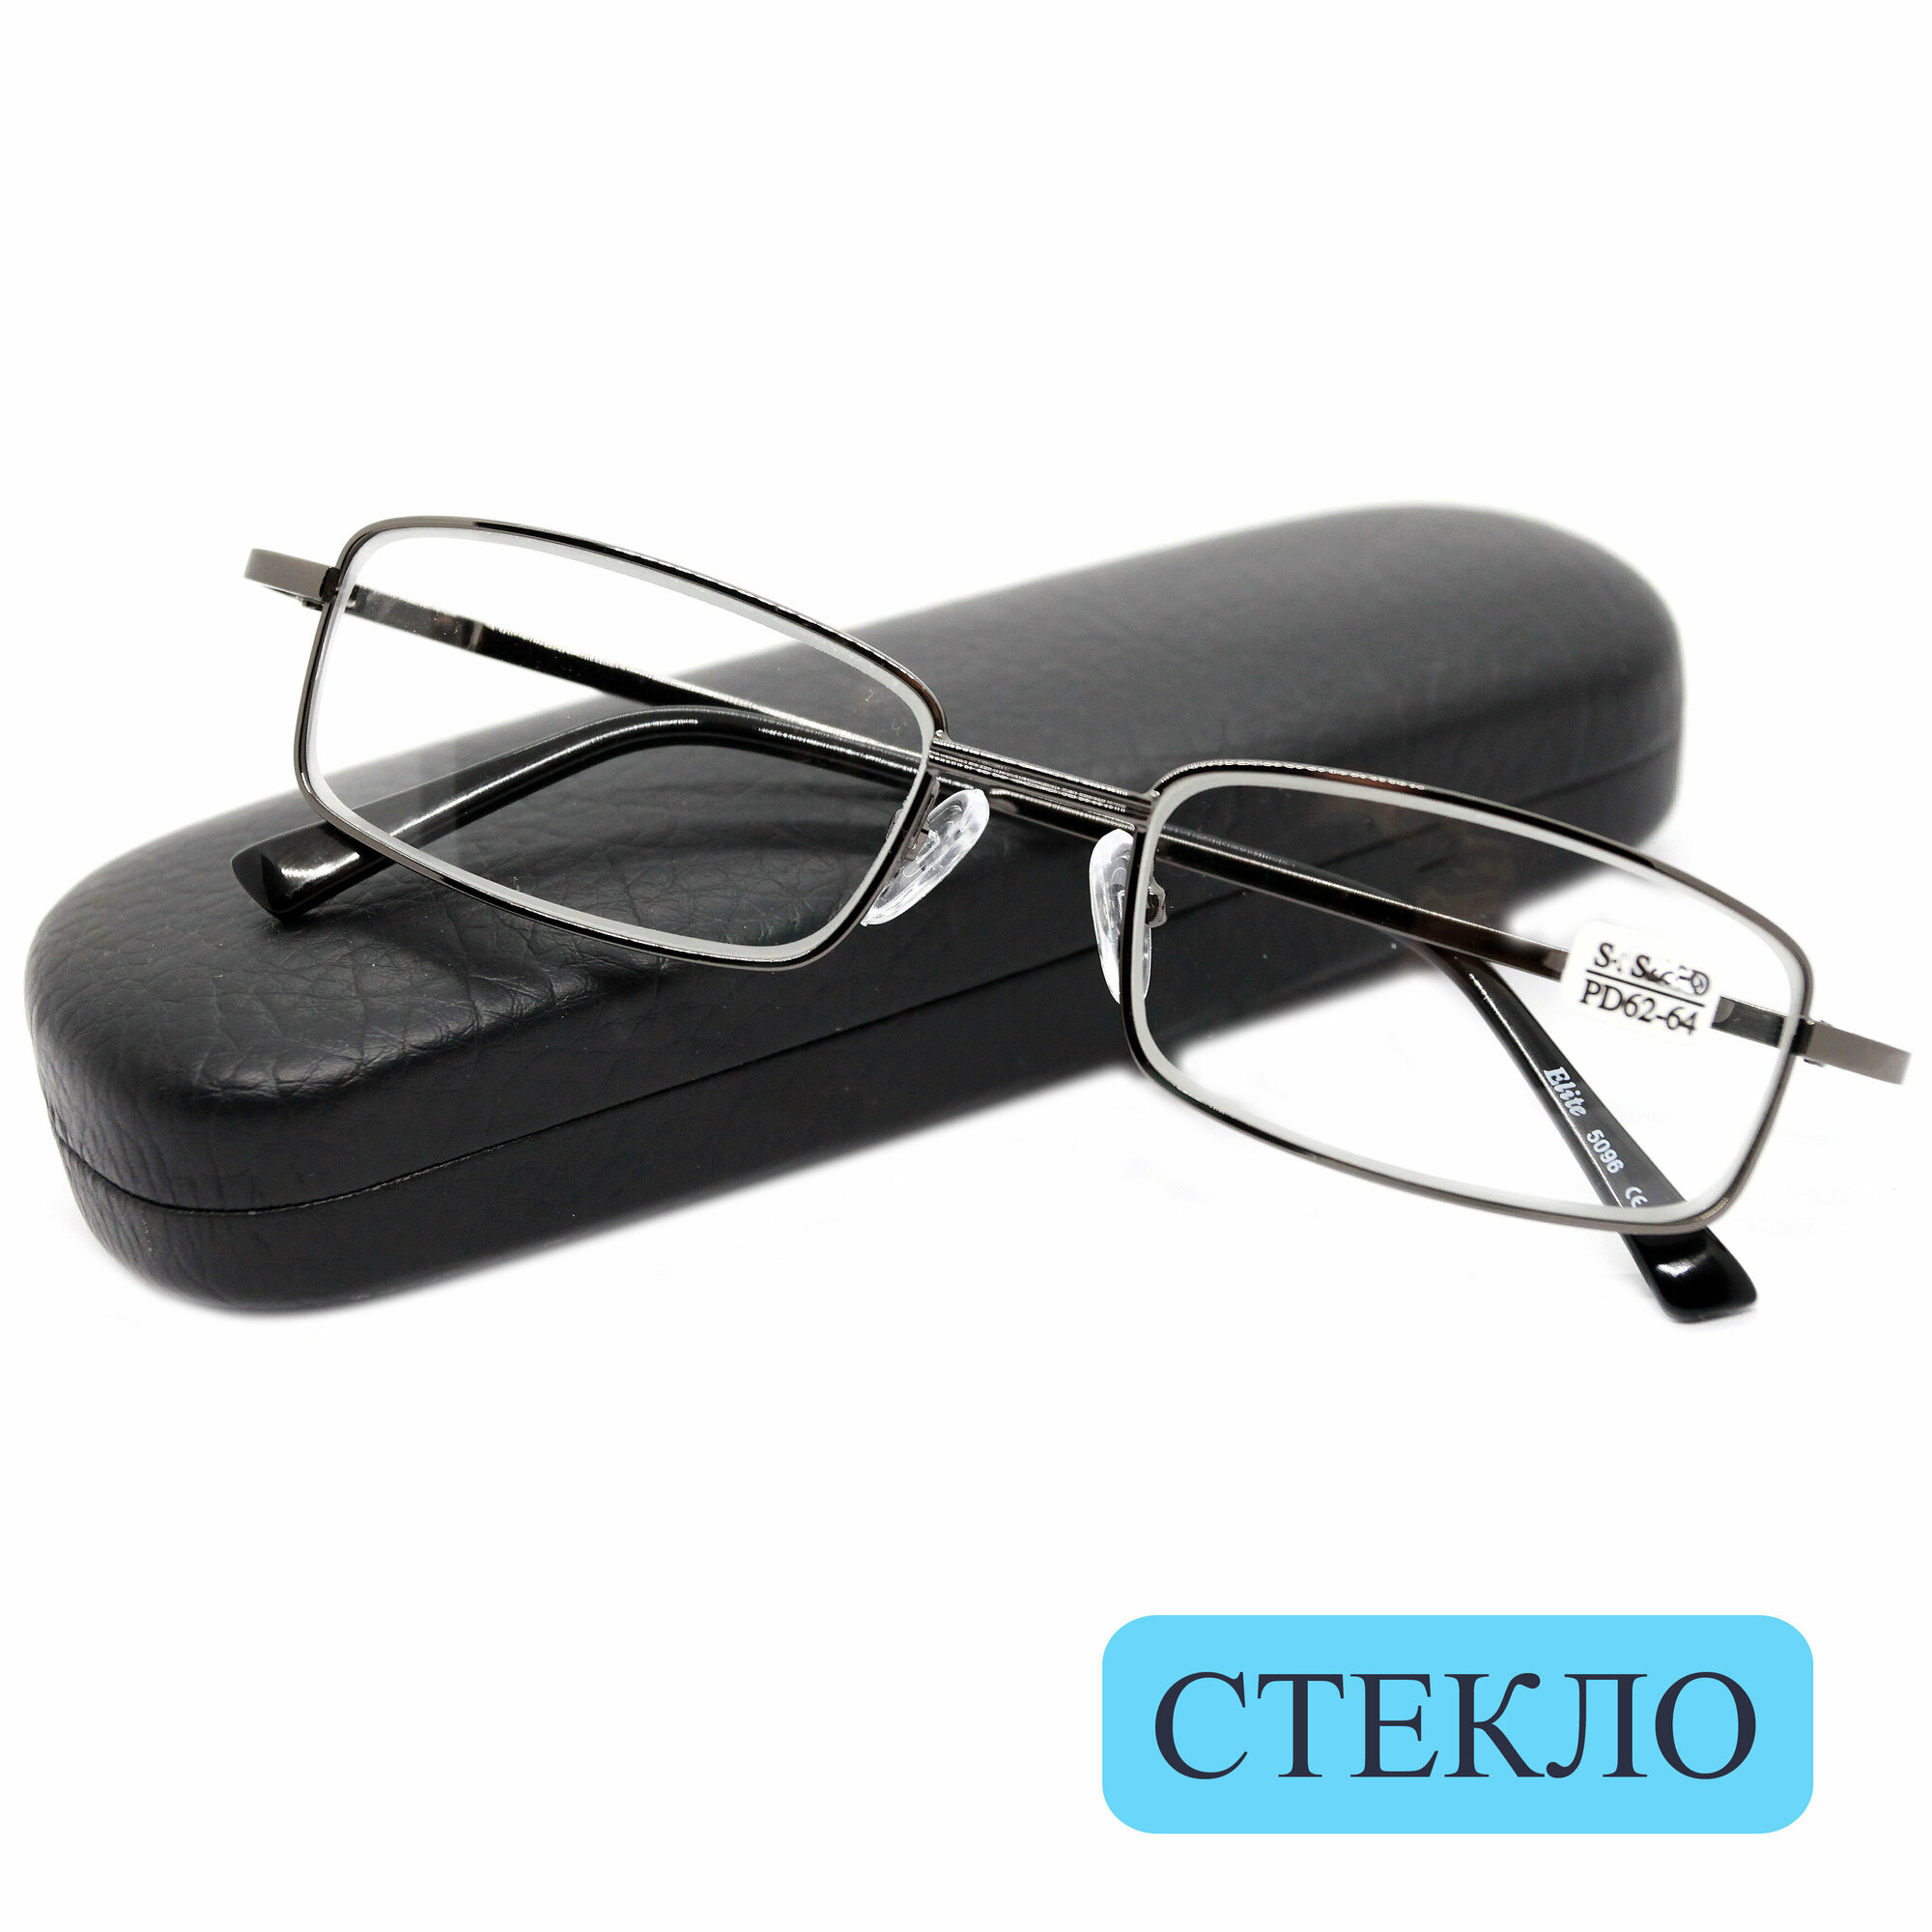 Качественные очки из медицинской стали со стеклом (+2.25) ELITE 5096 линза стекло цвет золотистый РЦ 62-64 с футляром